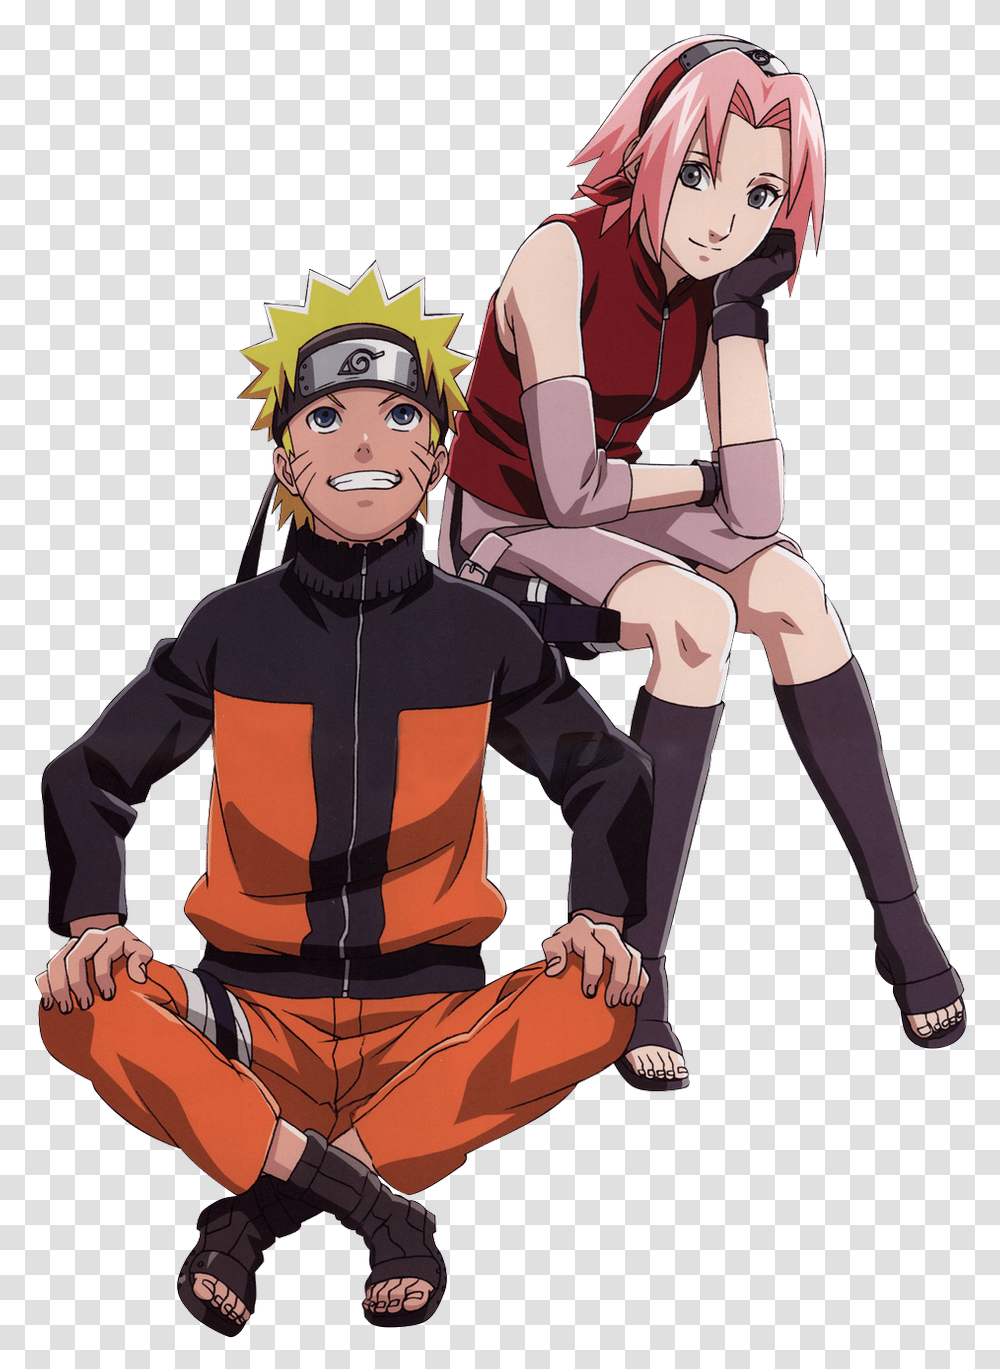 Naruto And Sakura, Person, Comics, Book, Manga Transparent Png